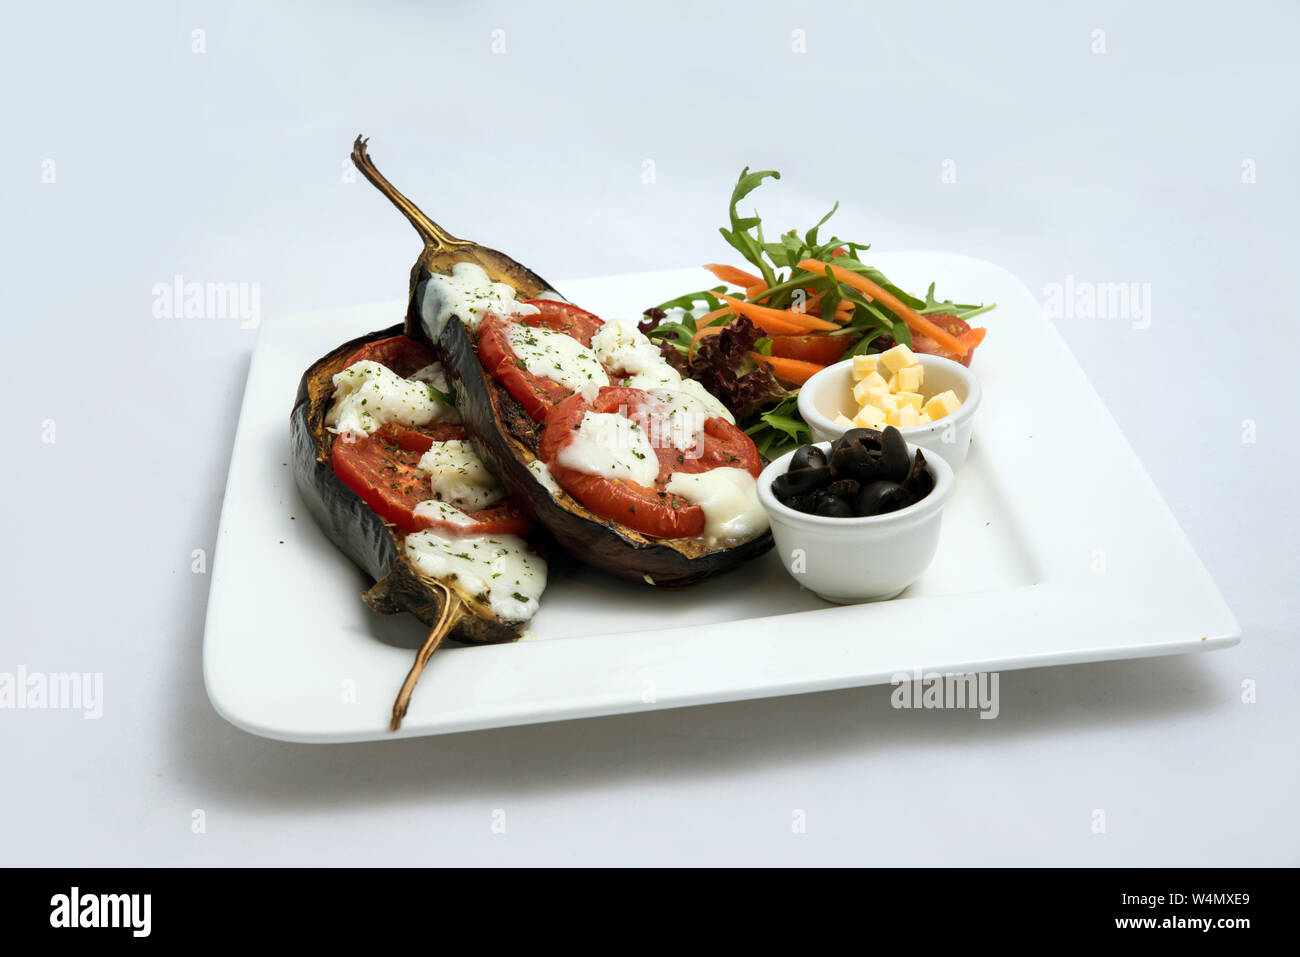 Un héros chaud à faible contraste d'un plat principal plat avec de l'aubergine grillée avec buffalo fromage, tomate, olives et légumes sur le côté, sur un minim Banque D'Images